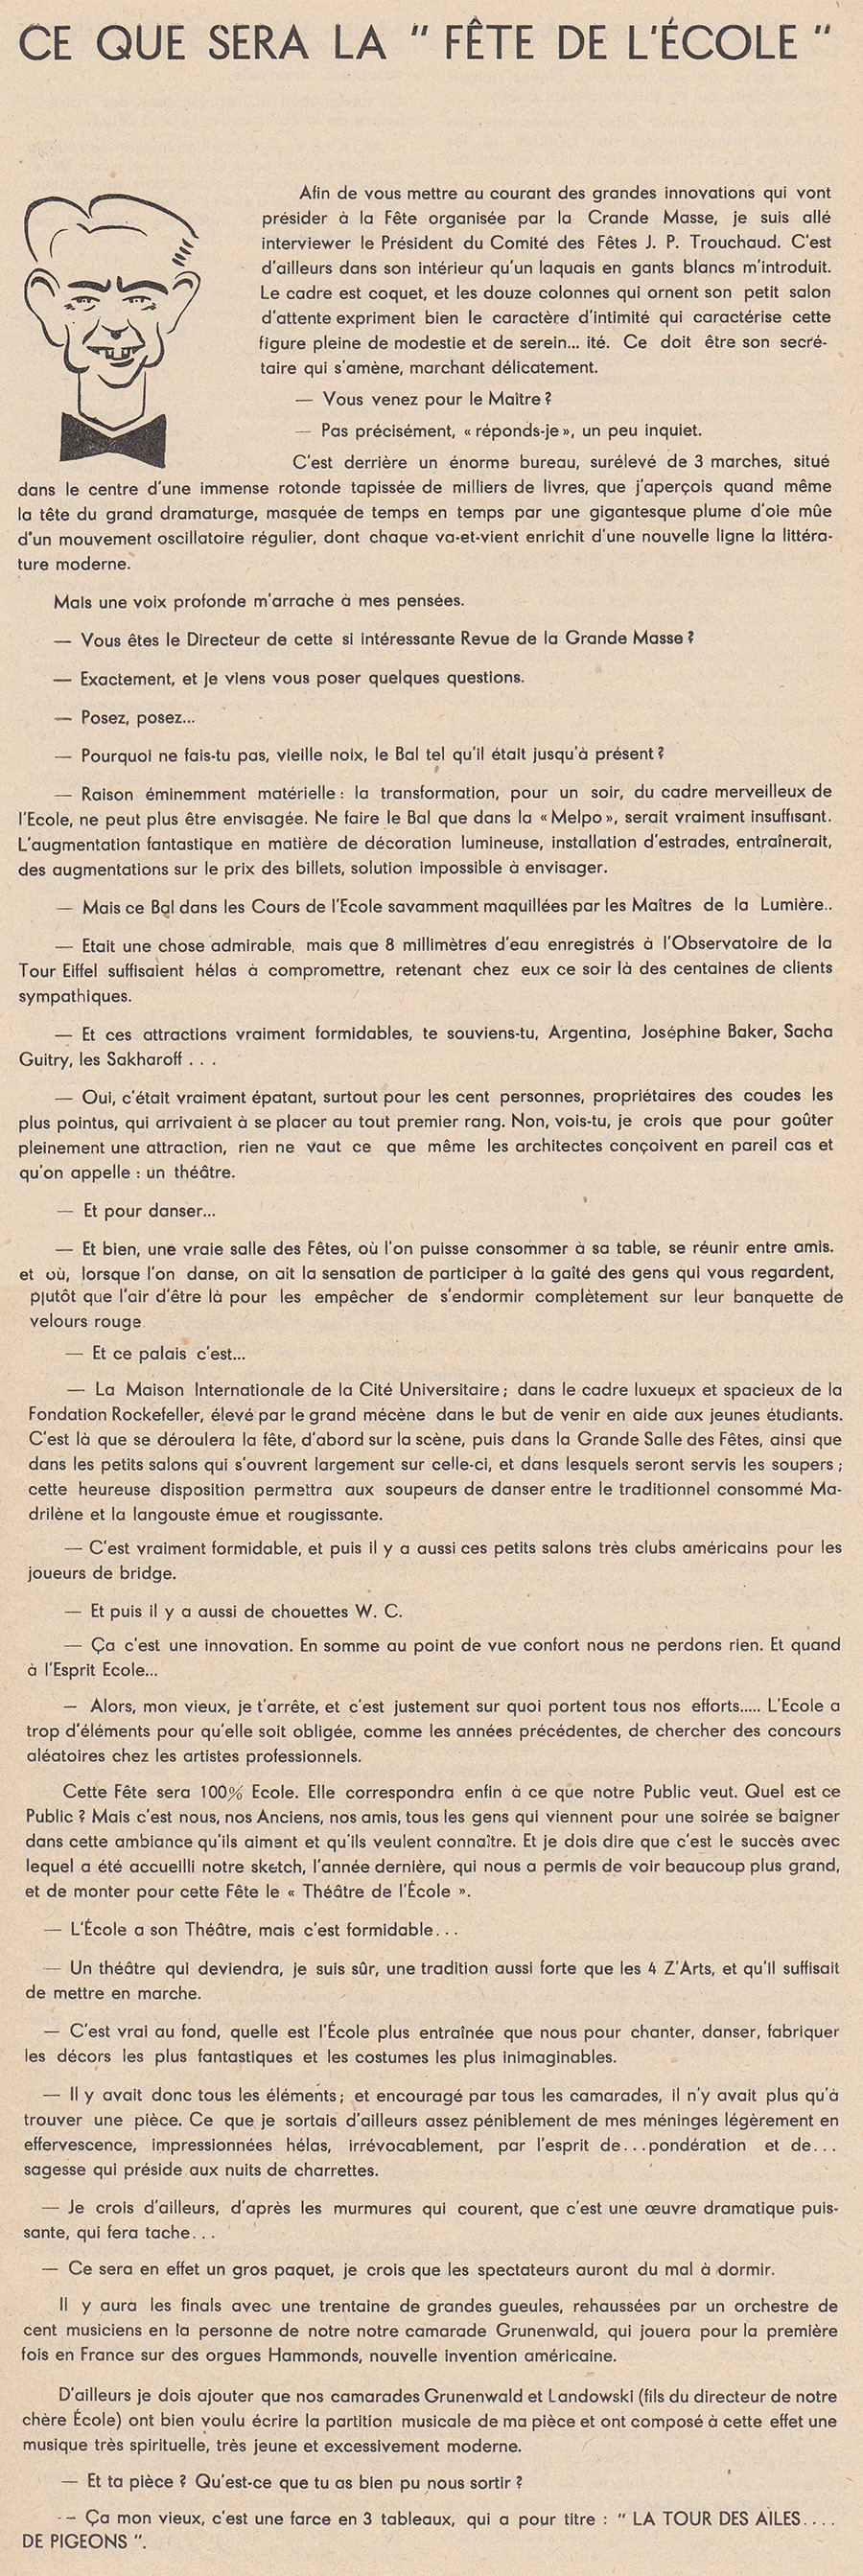 193802_Bulletin-GMBA_Ce-que-sera-le-Bal.jpg